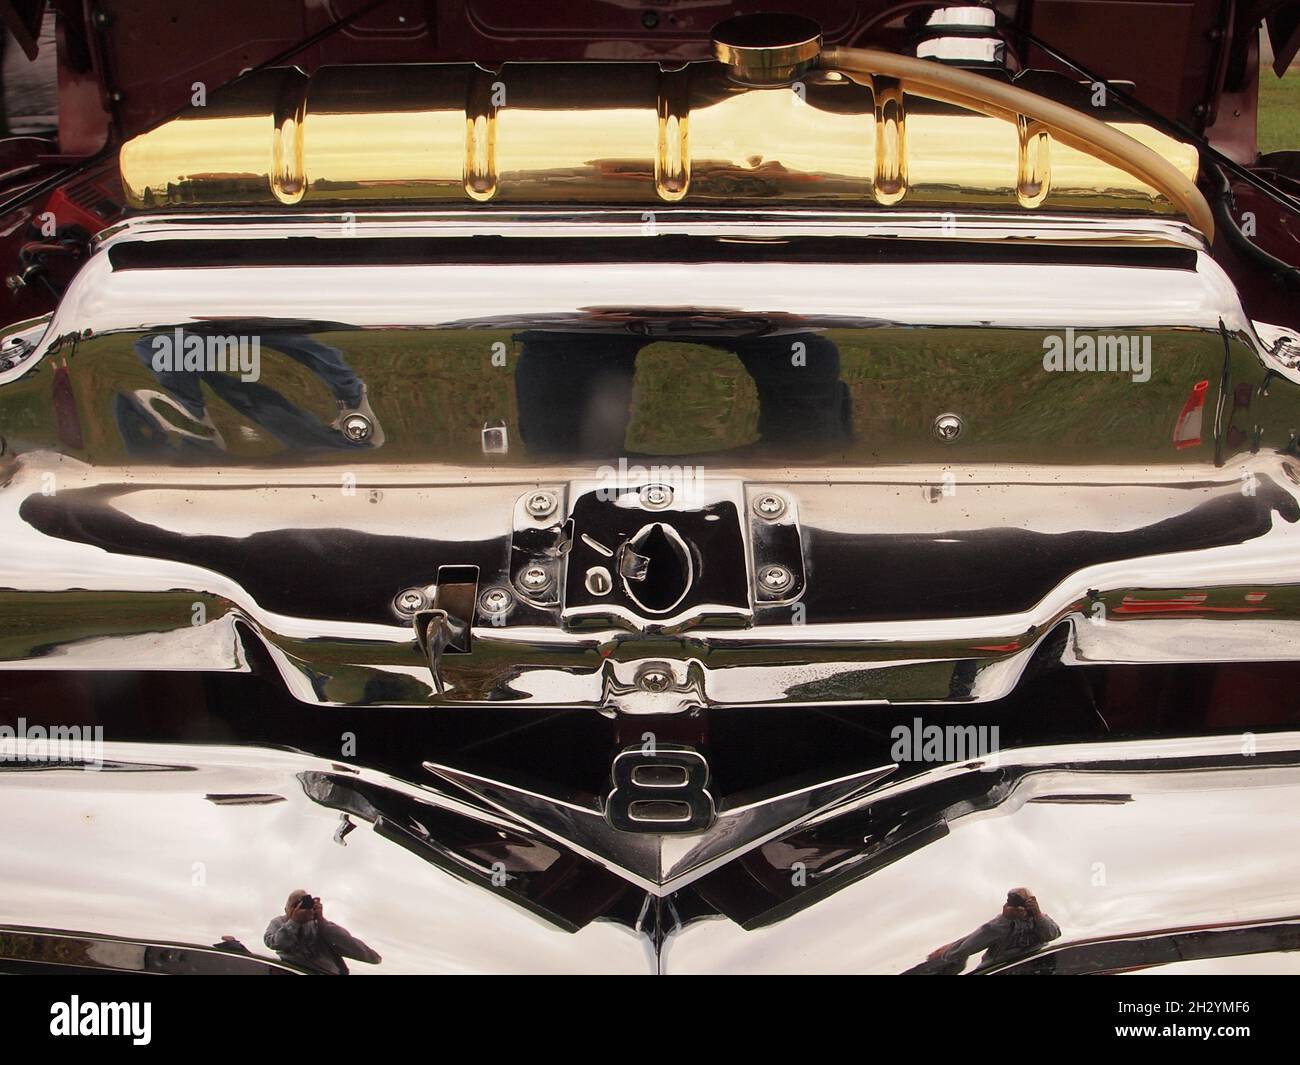 Dettagli di numerose auto classiche e hot rod statunitensi che mostrano la pittura personalizzata e l'attenzione al dettaglio. Mostra di auto tipiche americane in Nord America. Foto Stock